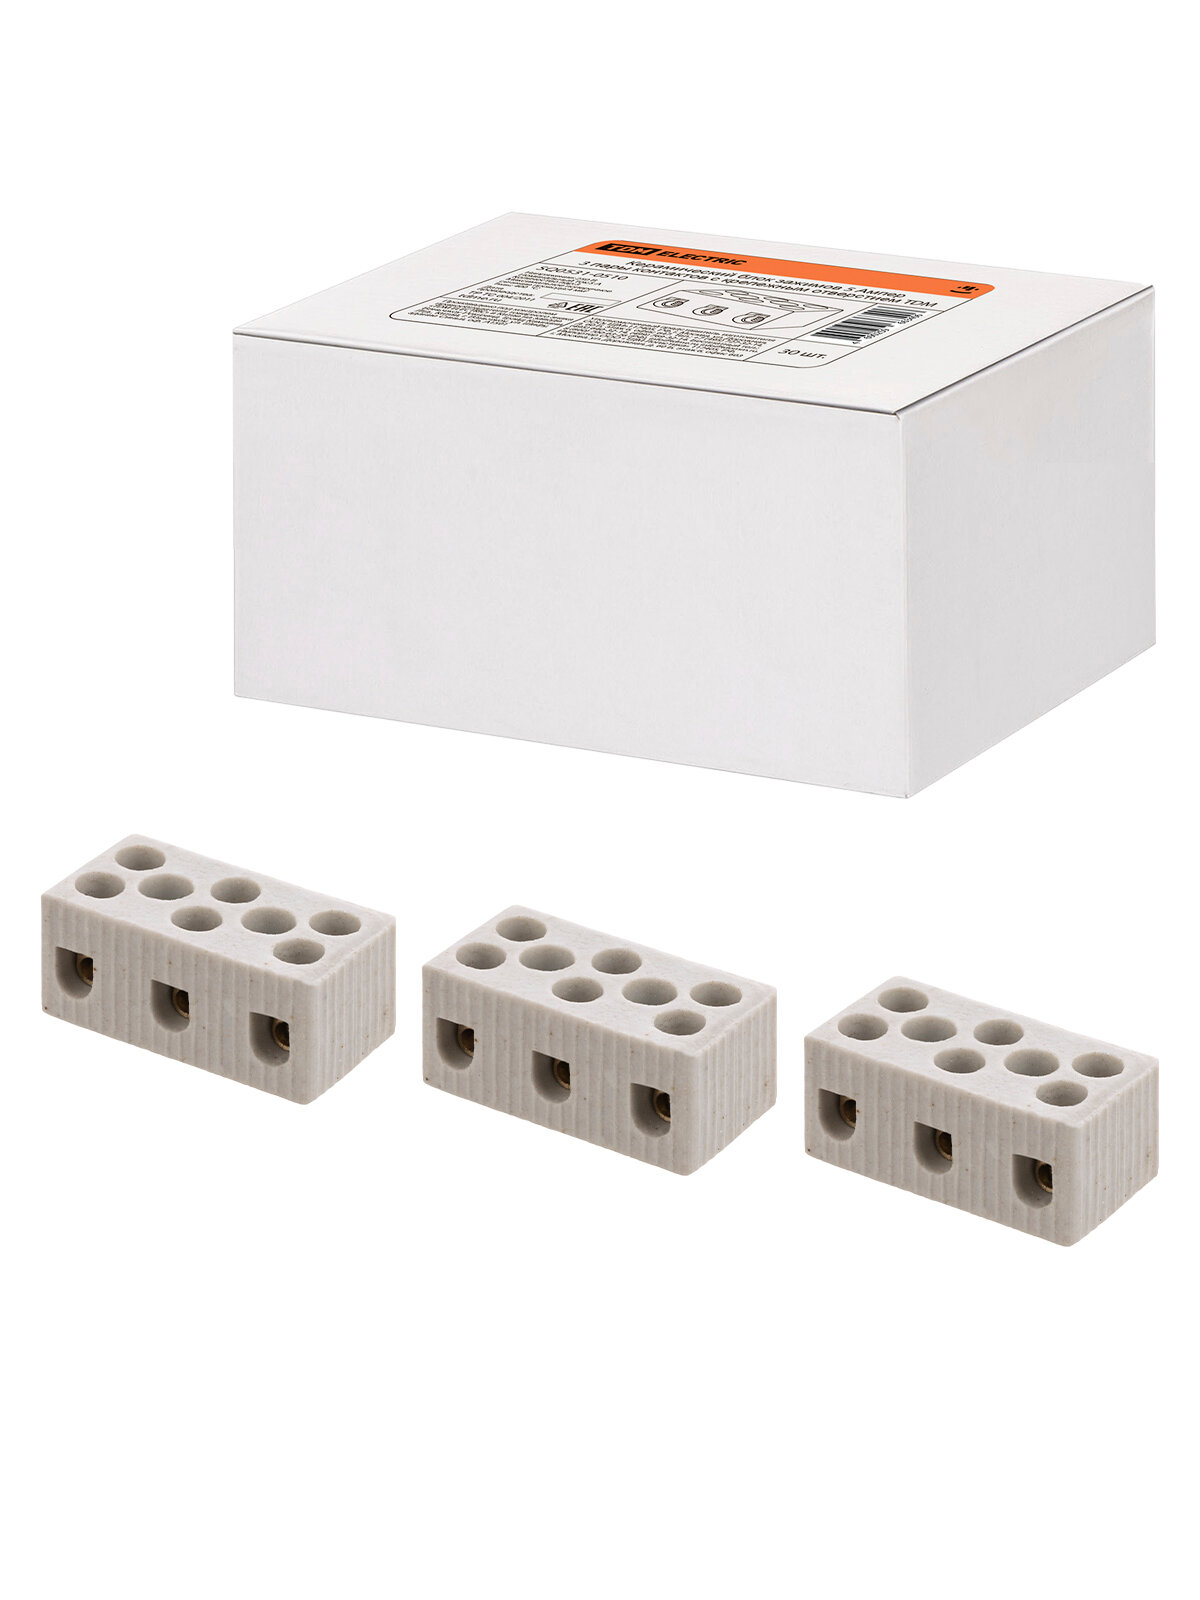 Керамический блок зажимов 5 Ампер 3 пары контактов с крепежным отверстием TDM SQ0531-0510, цена за 1 штуку